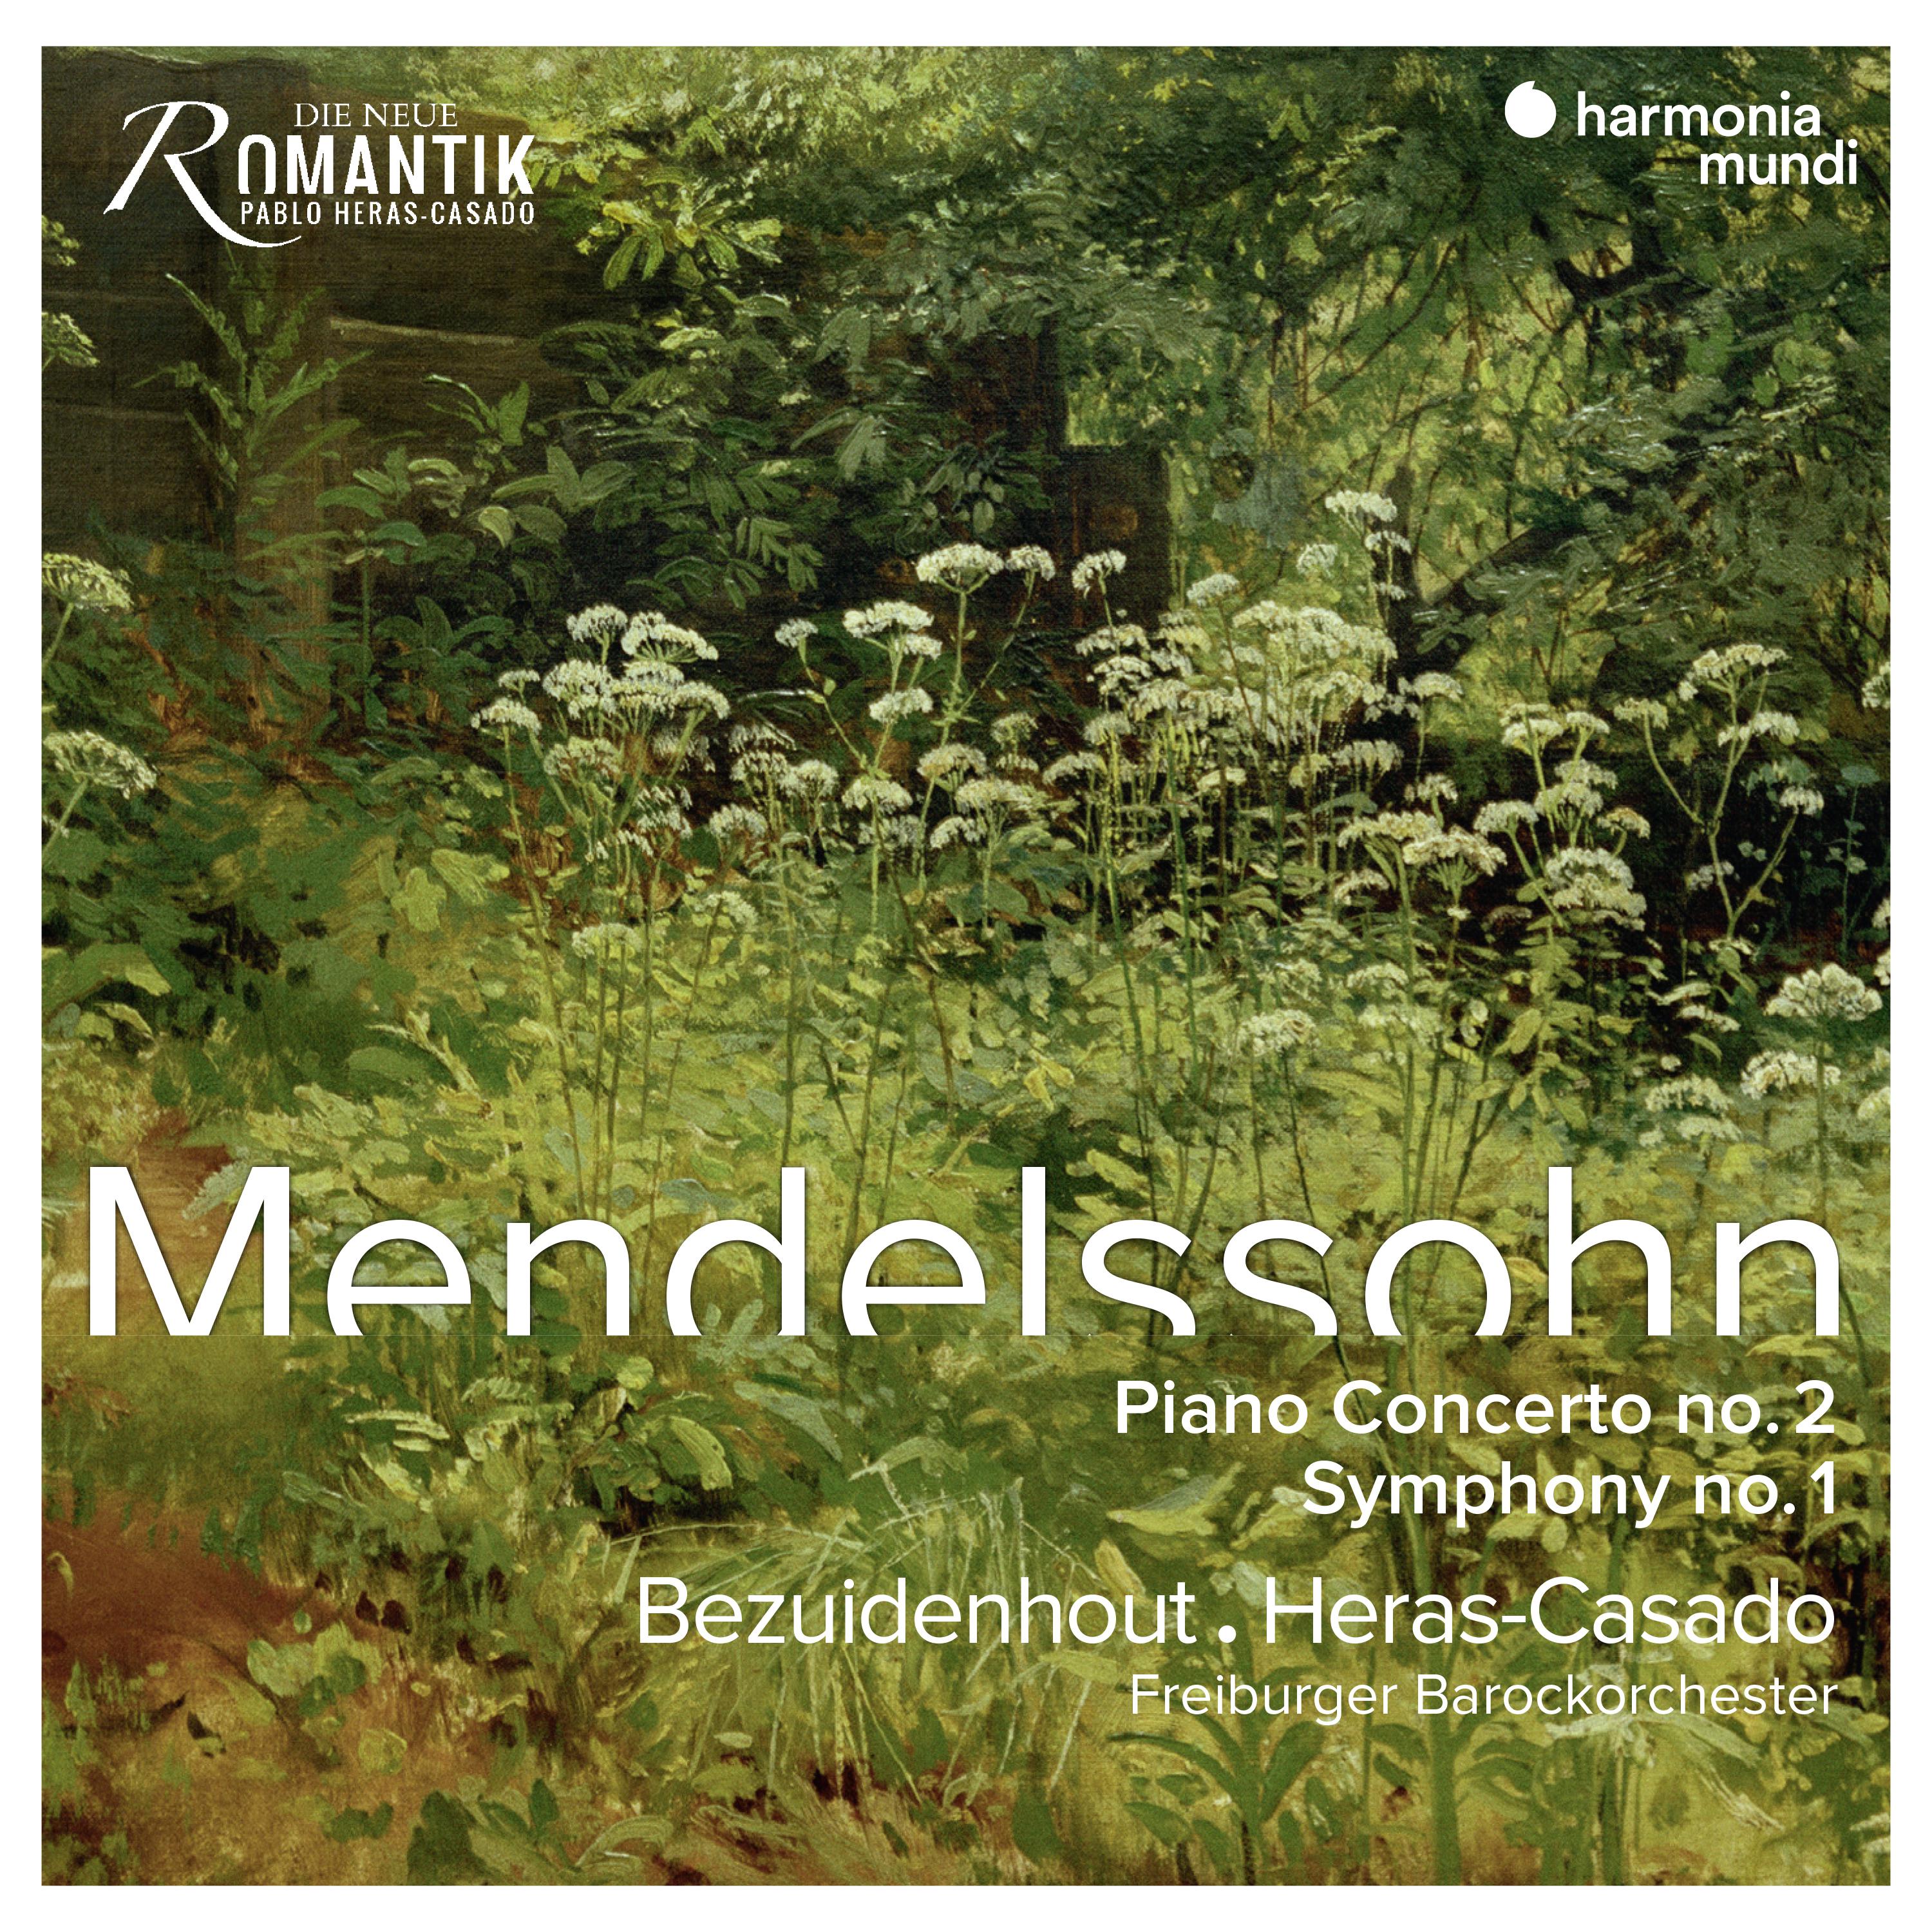 Mendelssohn: Piano Concerto No. 2 & Symphony No. 1